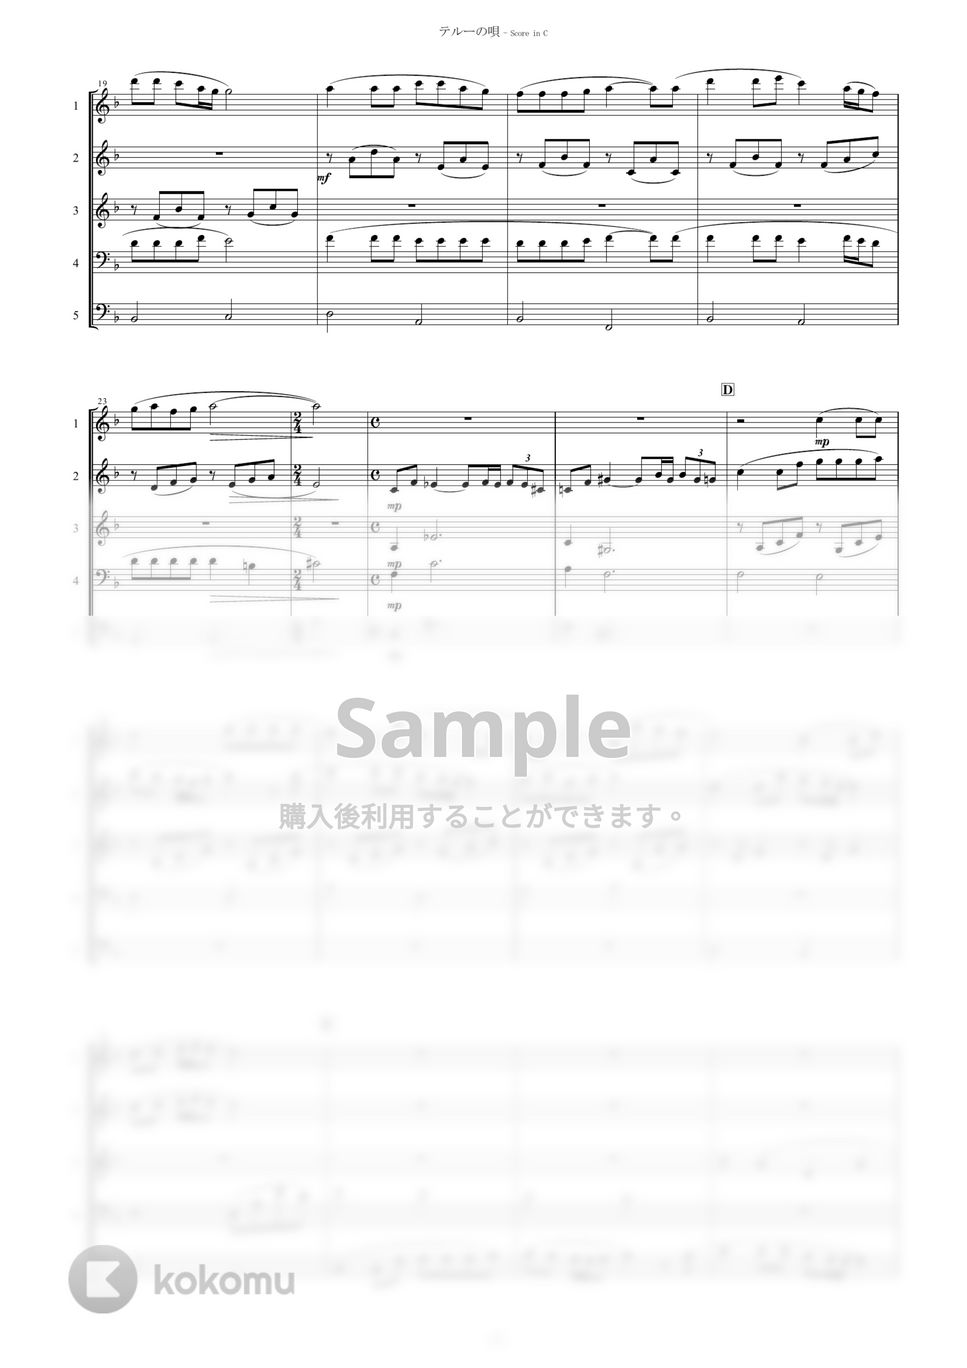 ゲド戦記 - テルーの唄 (5重奏) by muta-sax